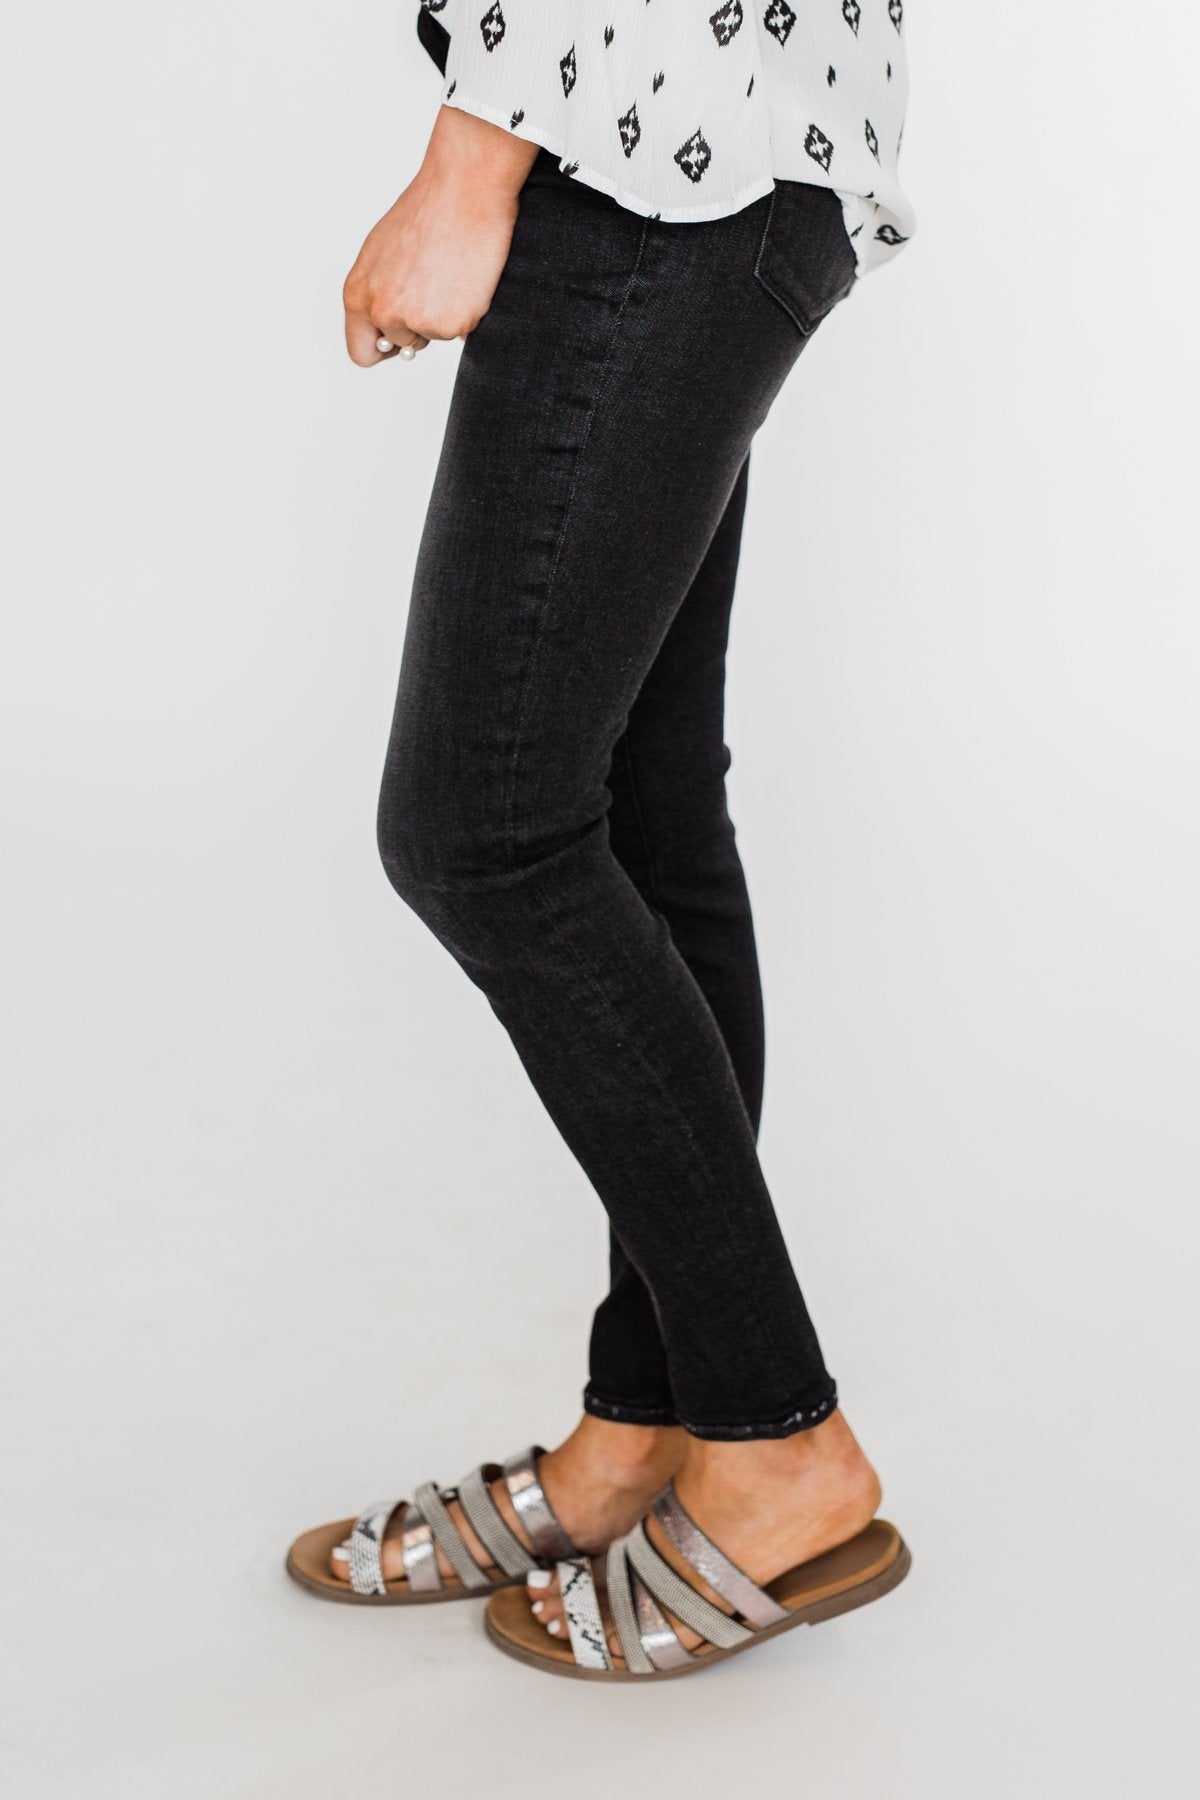 Sneak Peek Vintage Black Jeans- Josie Wash